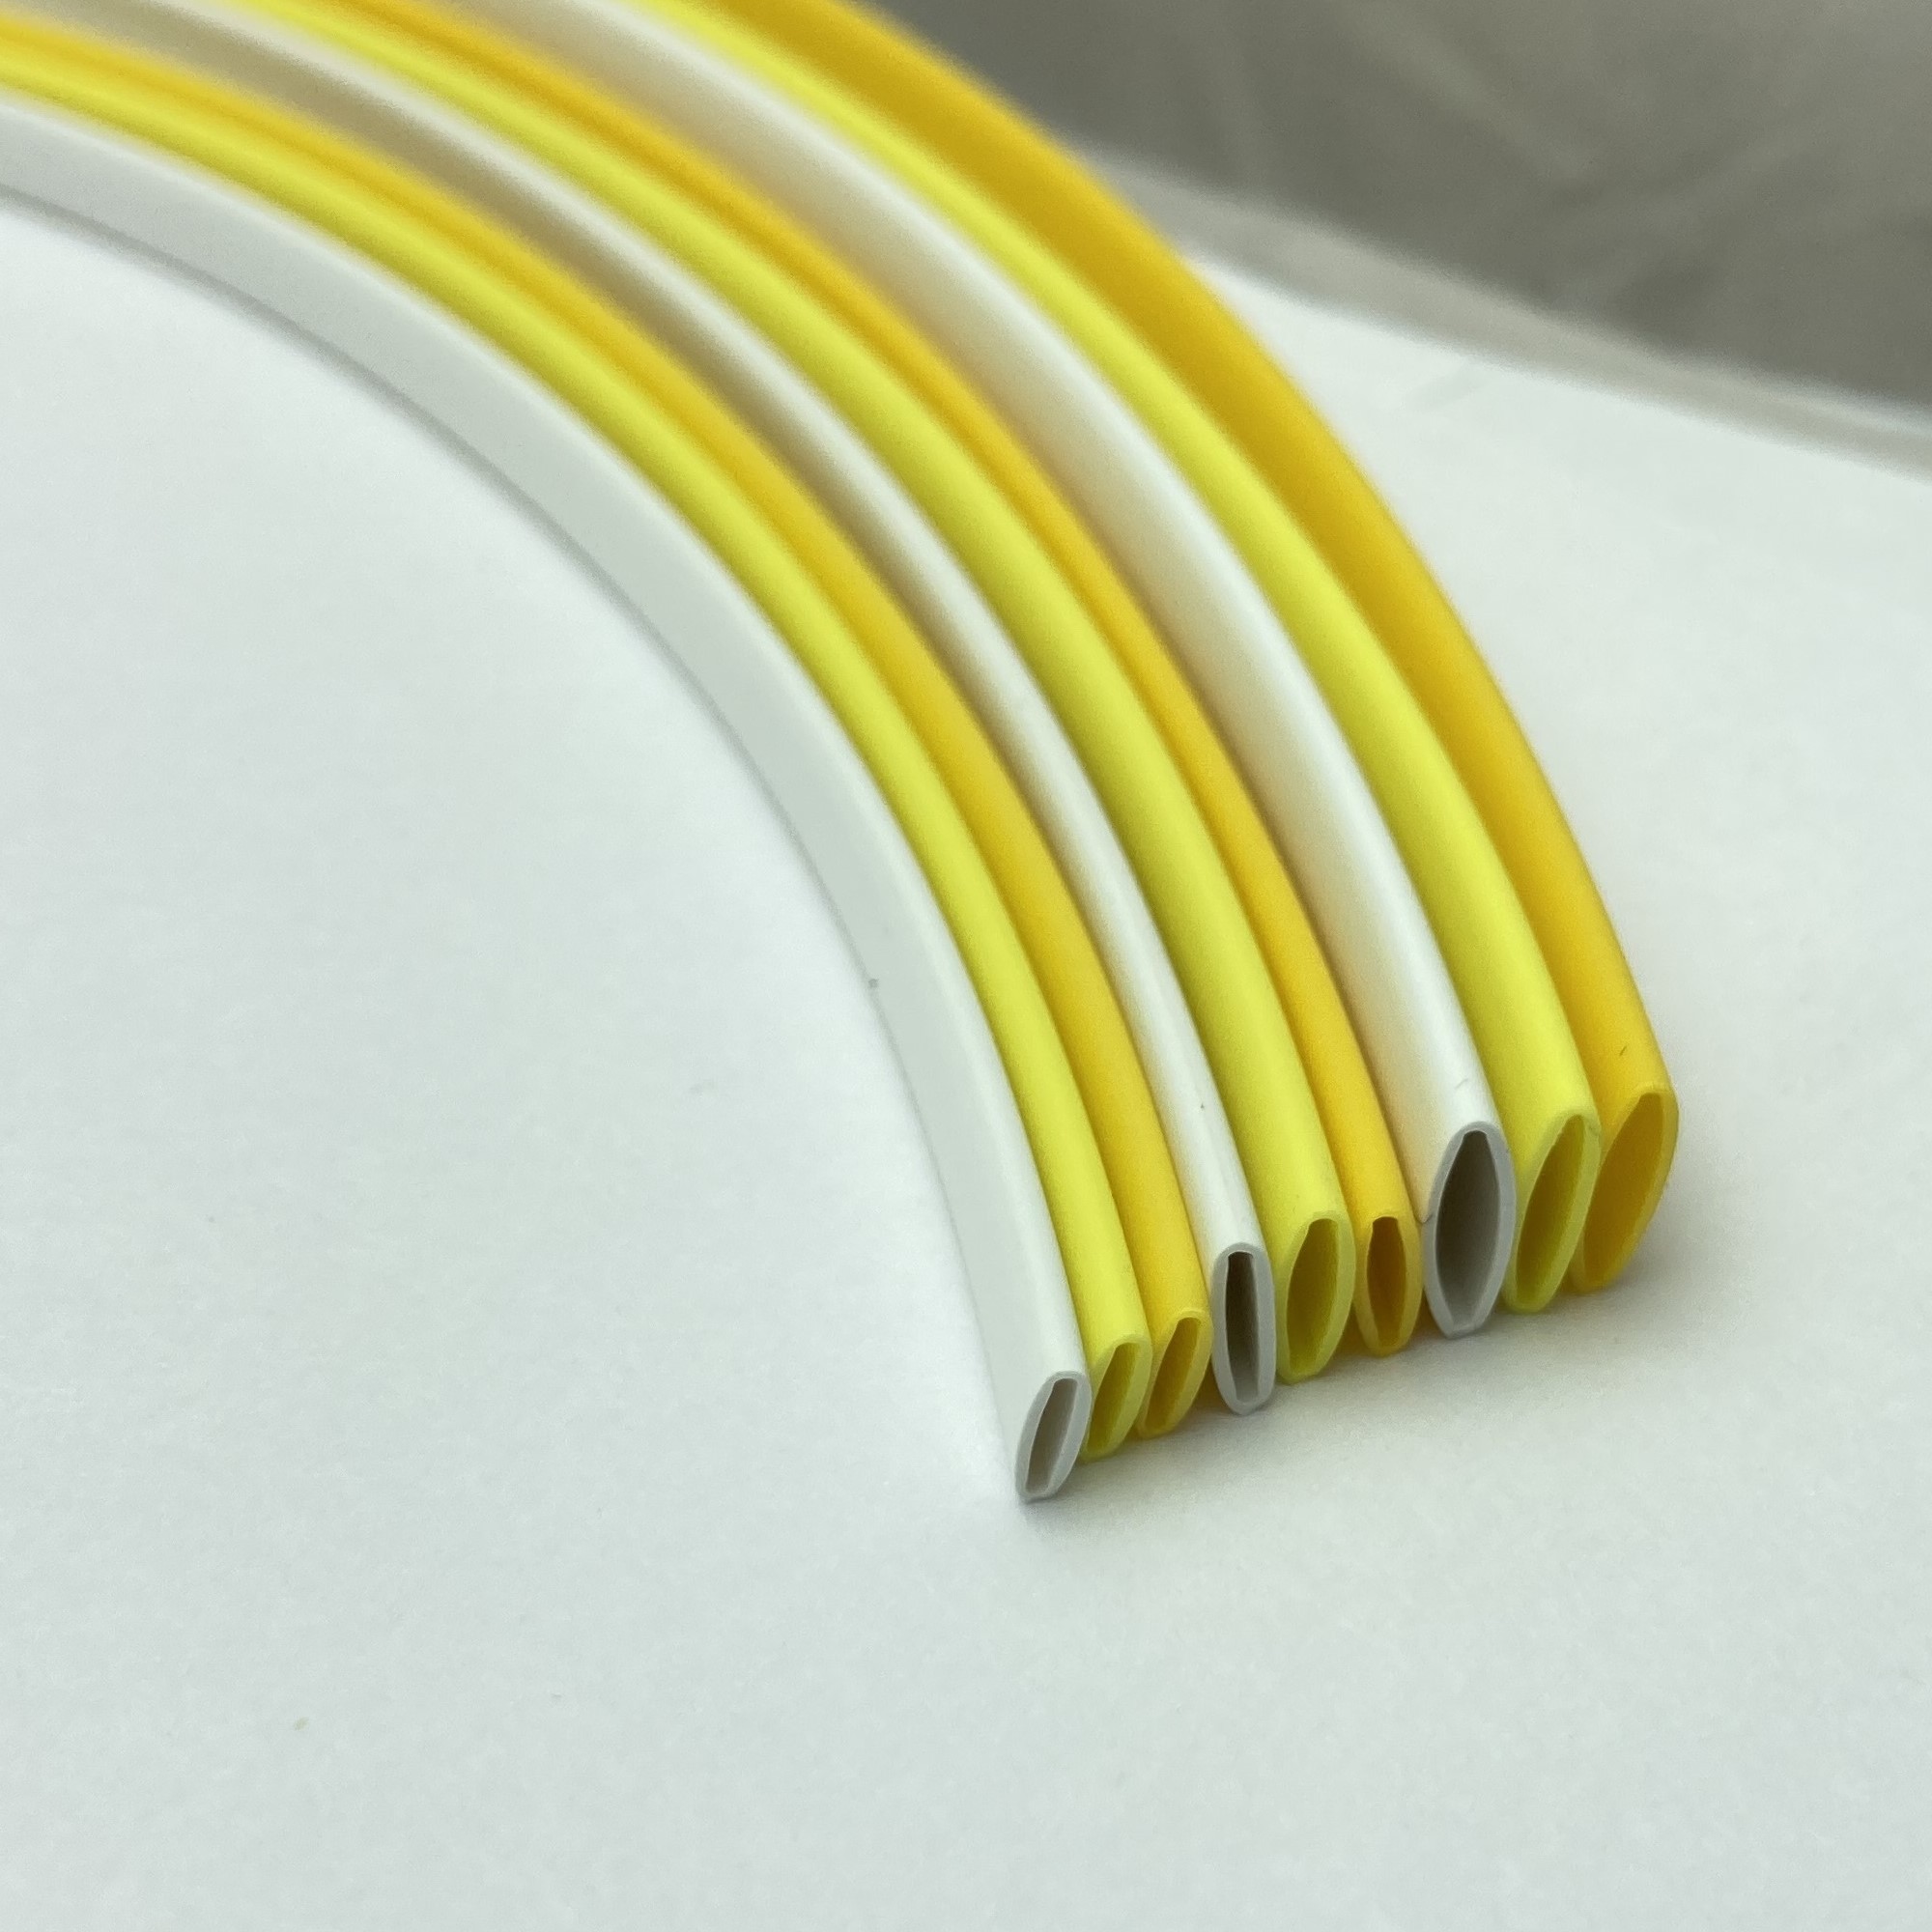 Фото Профиль ПВХ овальный Vell YL-032 для маркировки проводов, Ø 3,2 мм, 200 метров, желтый, аналог Partex PO-05 (самозатухающий) {378020} (5)